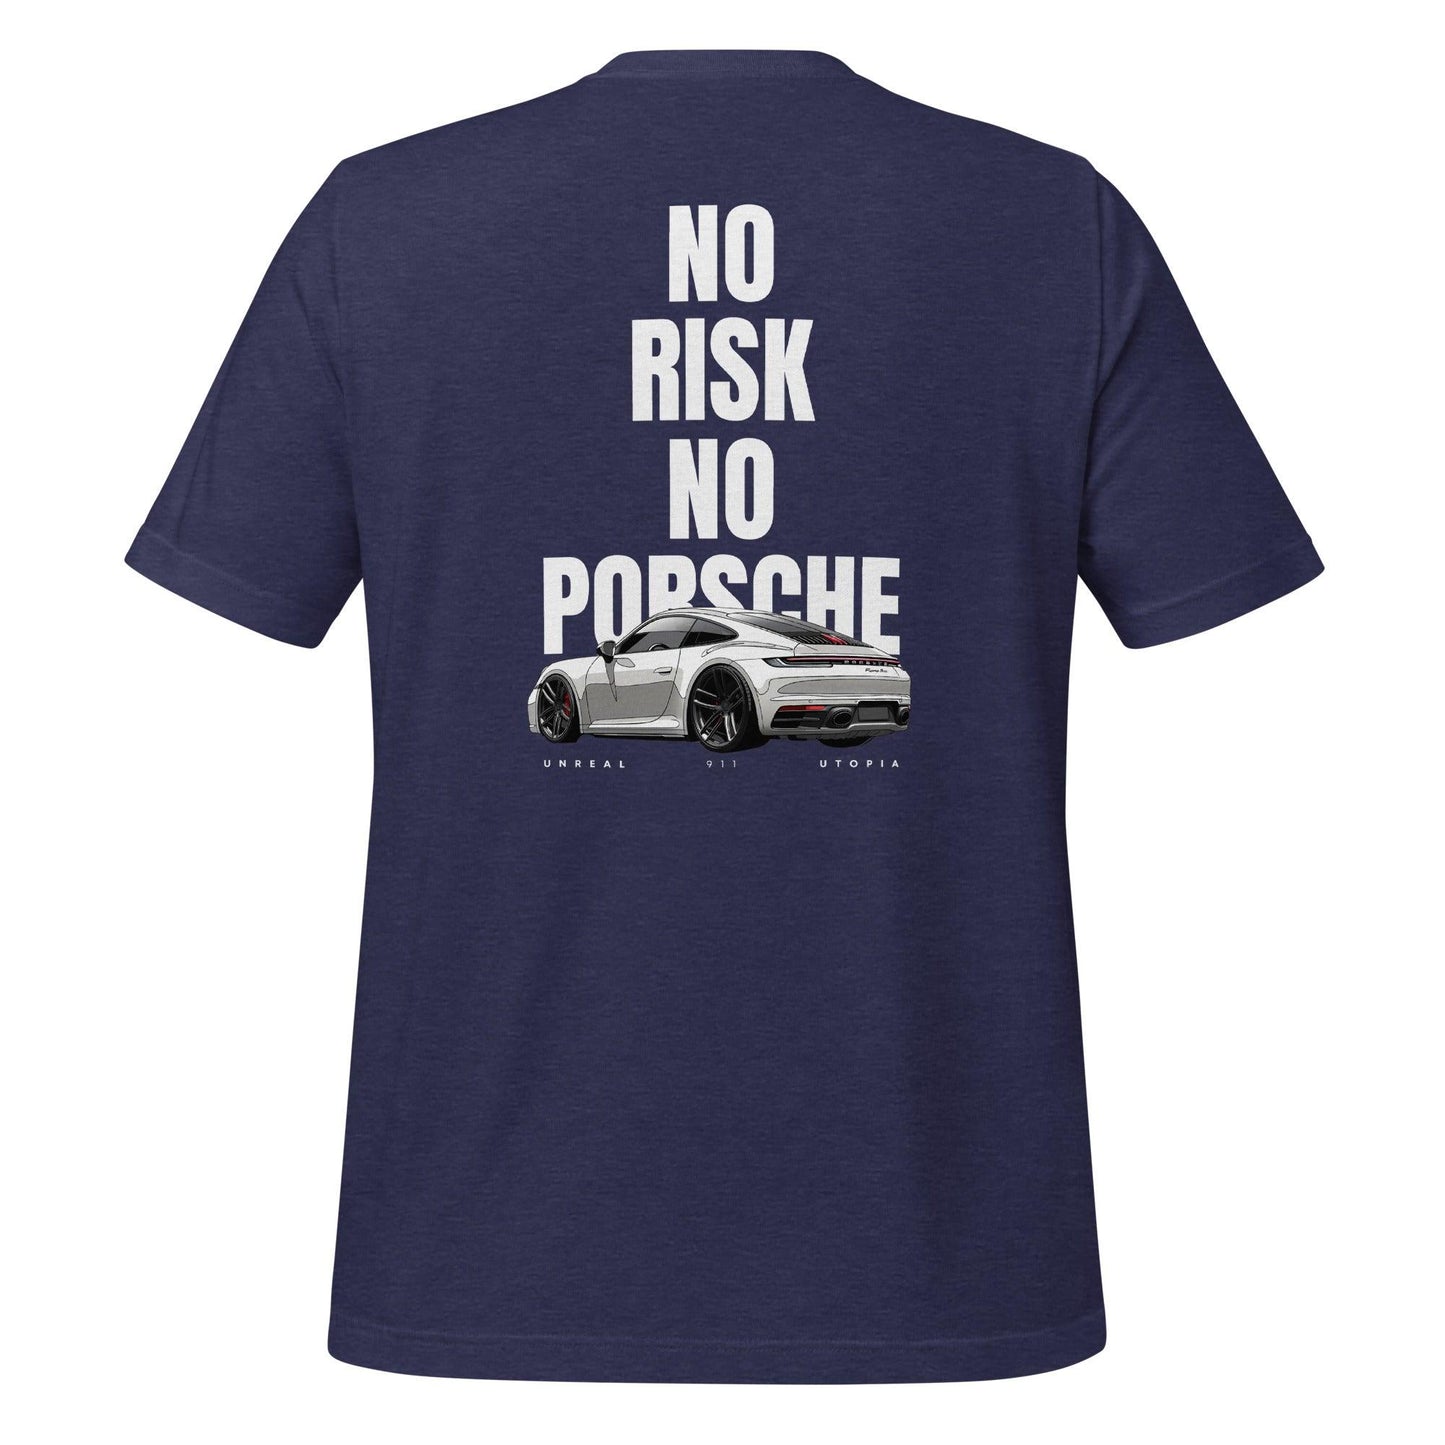 No Risk, No Porsche T-shirt - Unreal Utopia